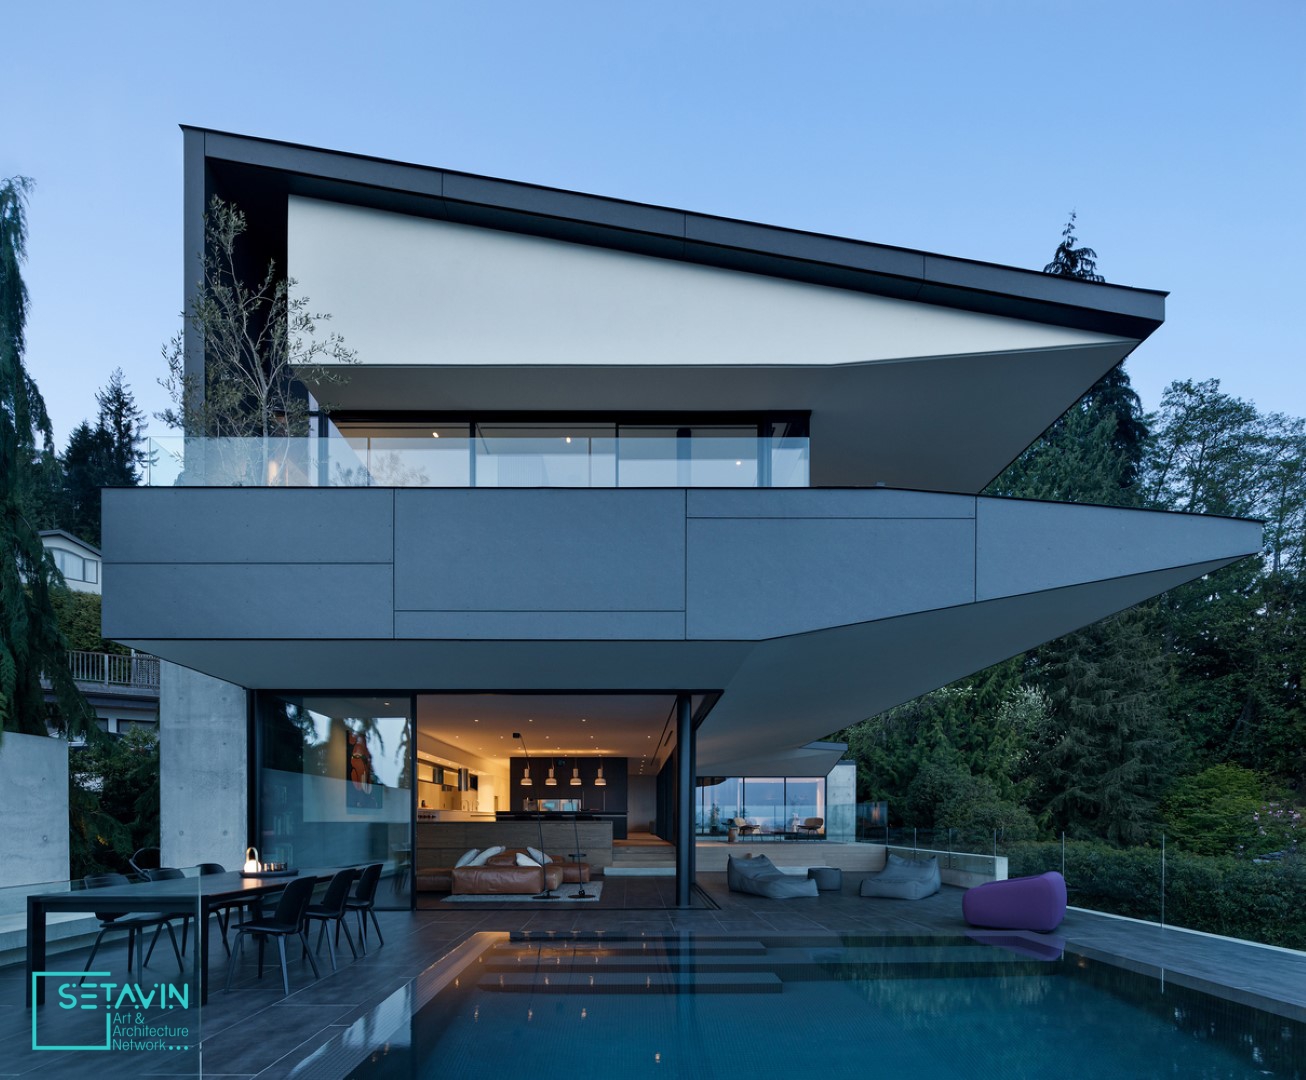 خانه , Mcleod Bovell Modern Houses , مسکونی , House , طراحی مسکونی , CANADA , کانادا , ونکور , طراحی معماری , معماری خانه , ویلا لوکس , خانه های لاکچری